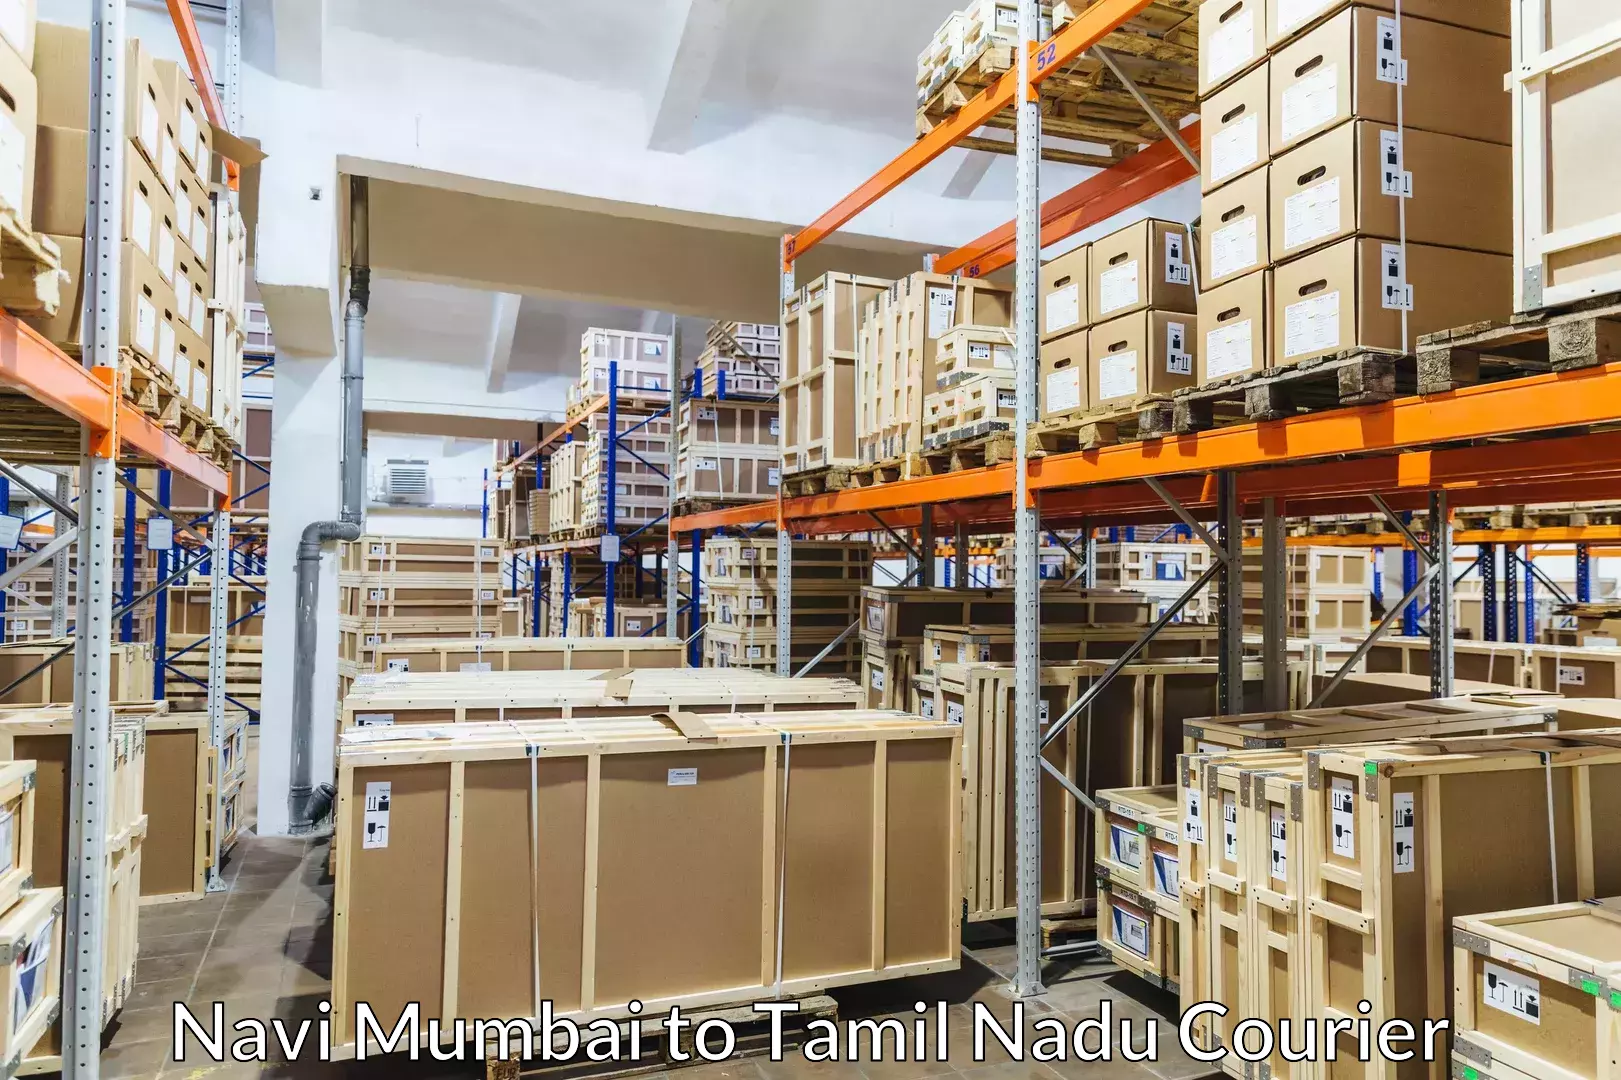 Baggage relocation service Navi Mumbai to Tamil Nadu